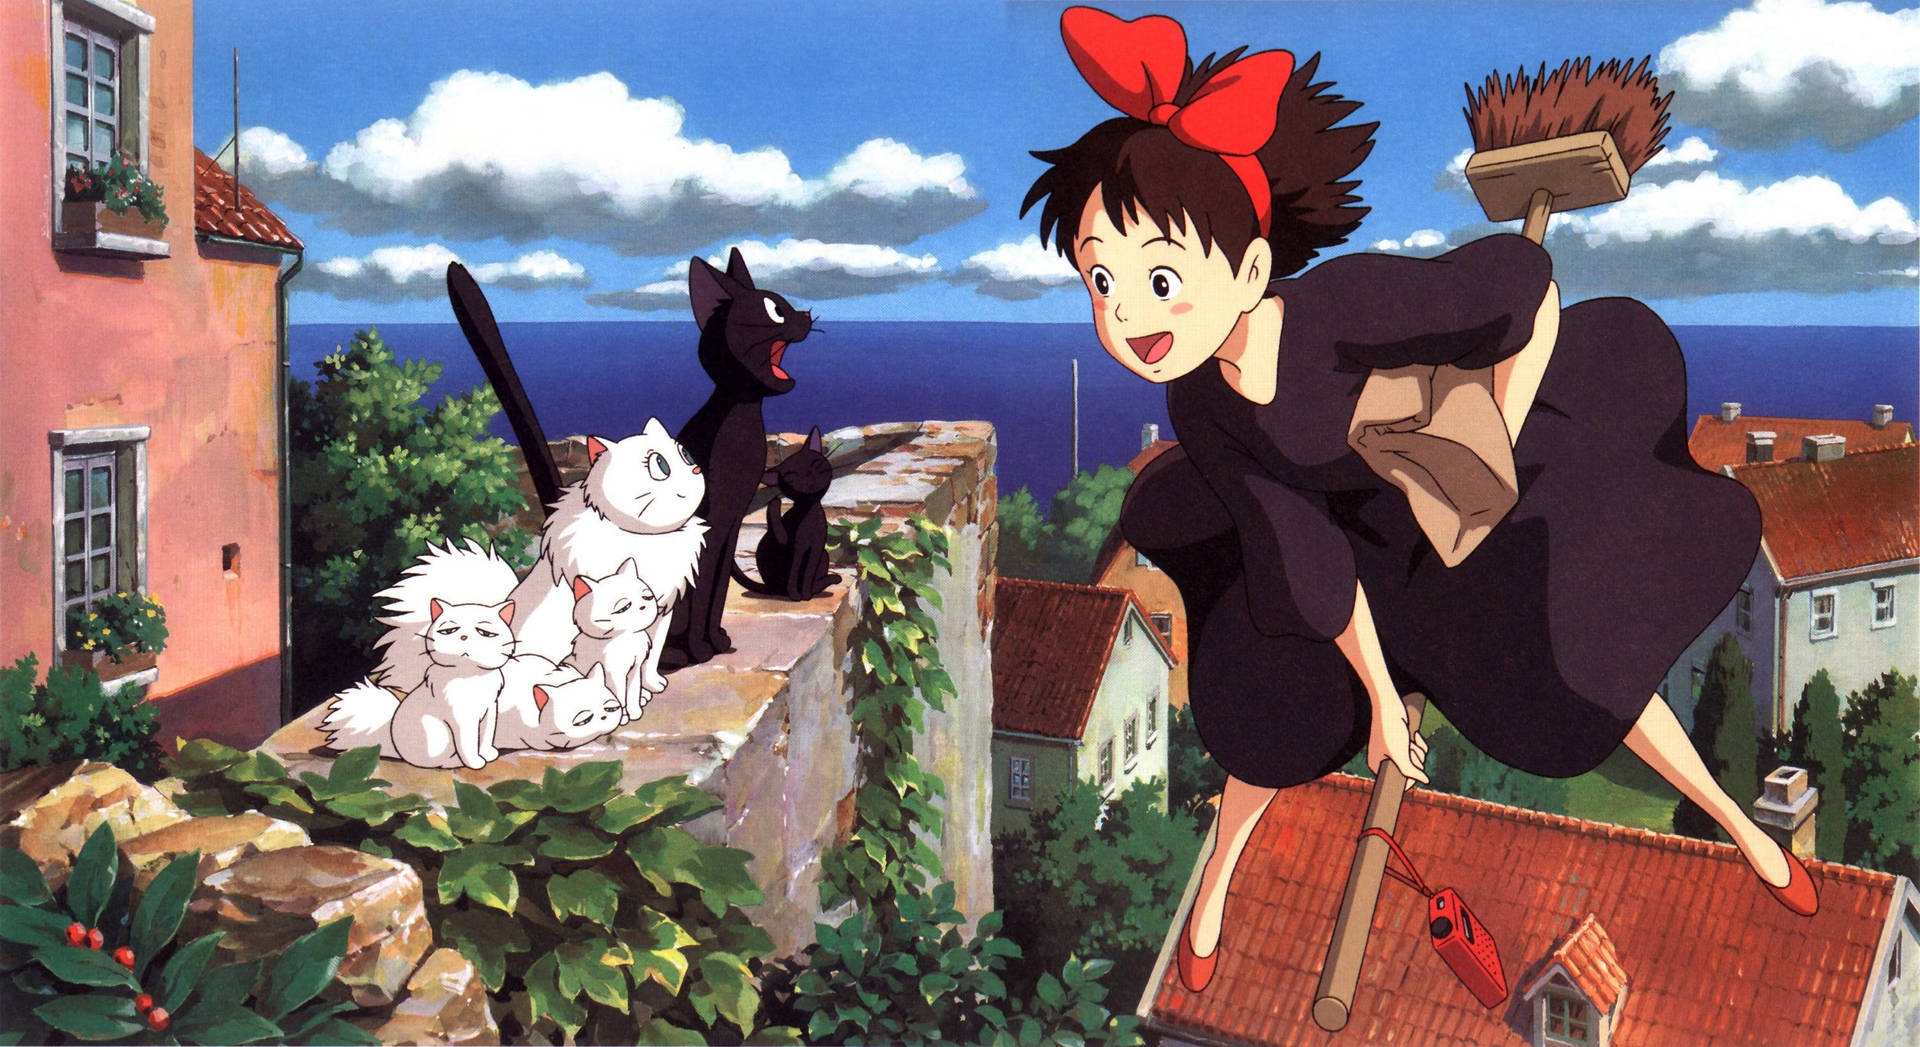 Studio Ghibli Kiki And Jiji